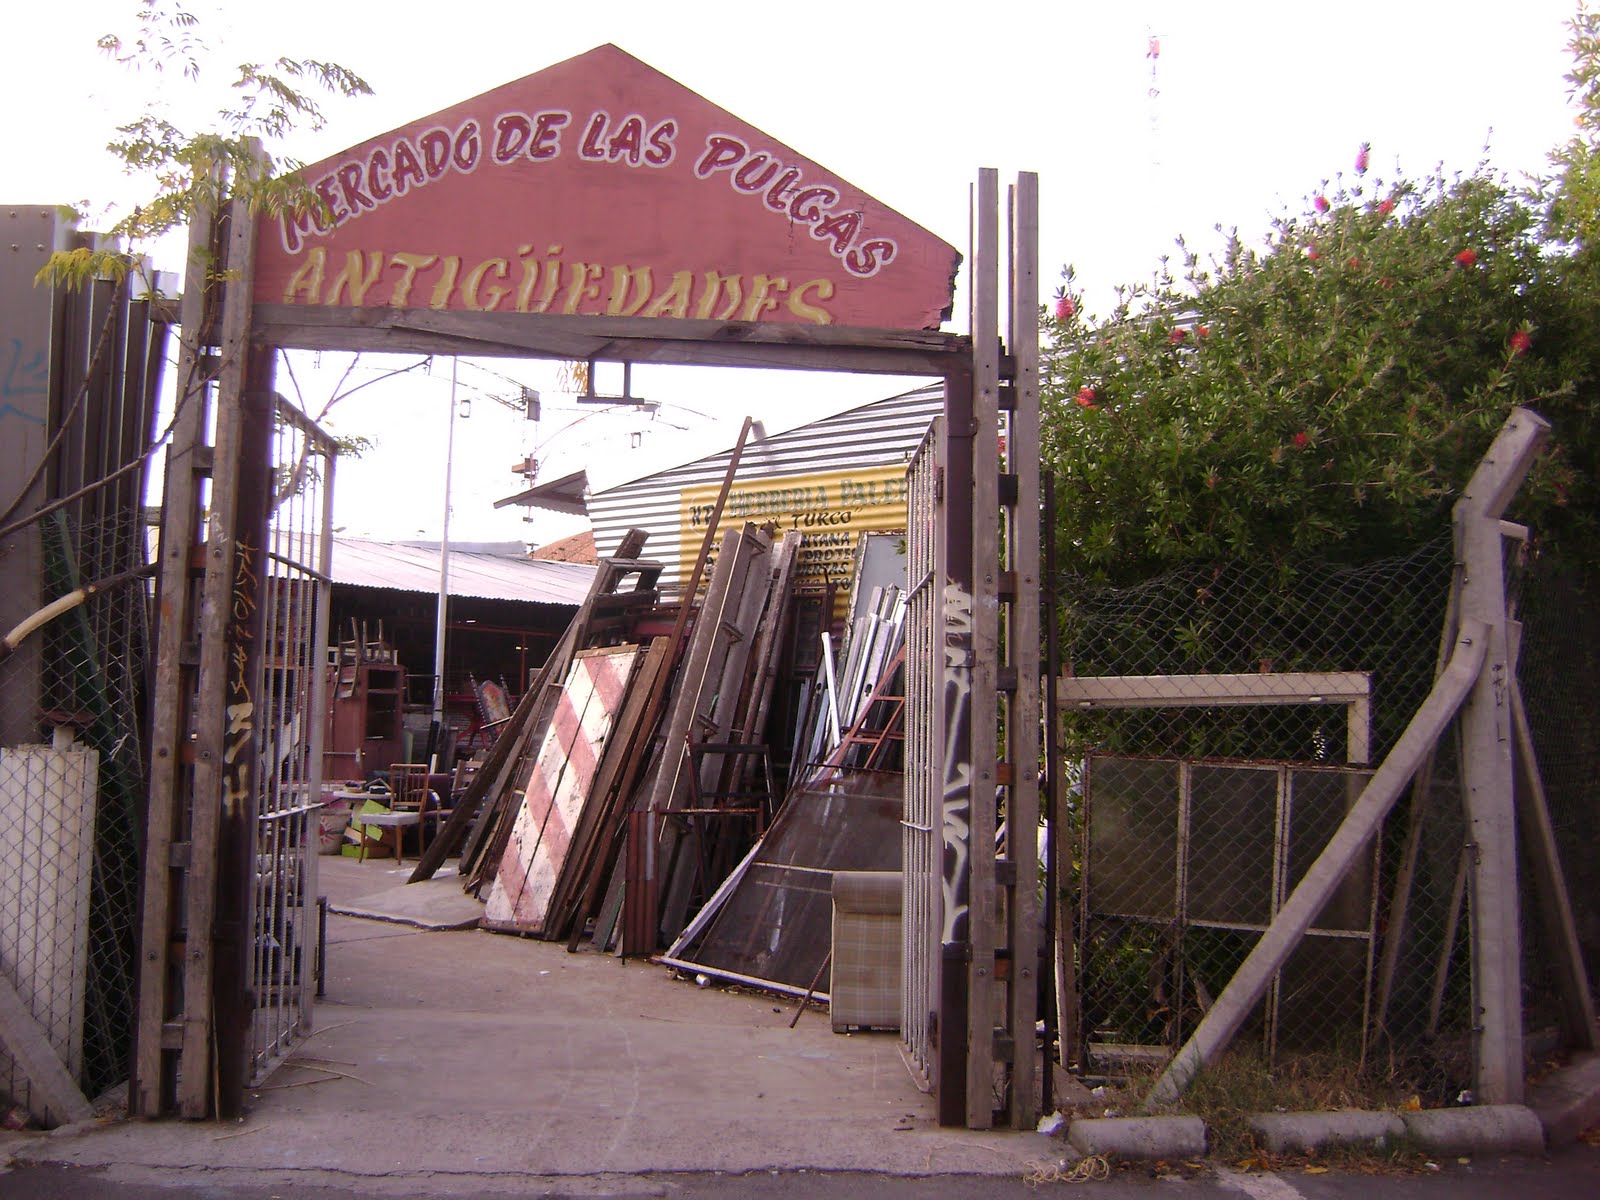 Mercado de Pulgas de Buenos Aires, Muebles usados y baratos